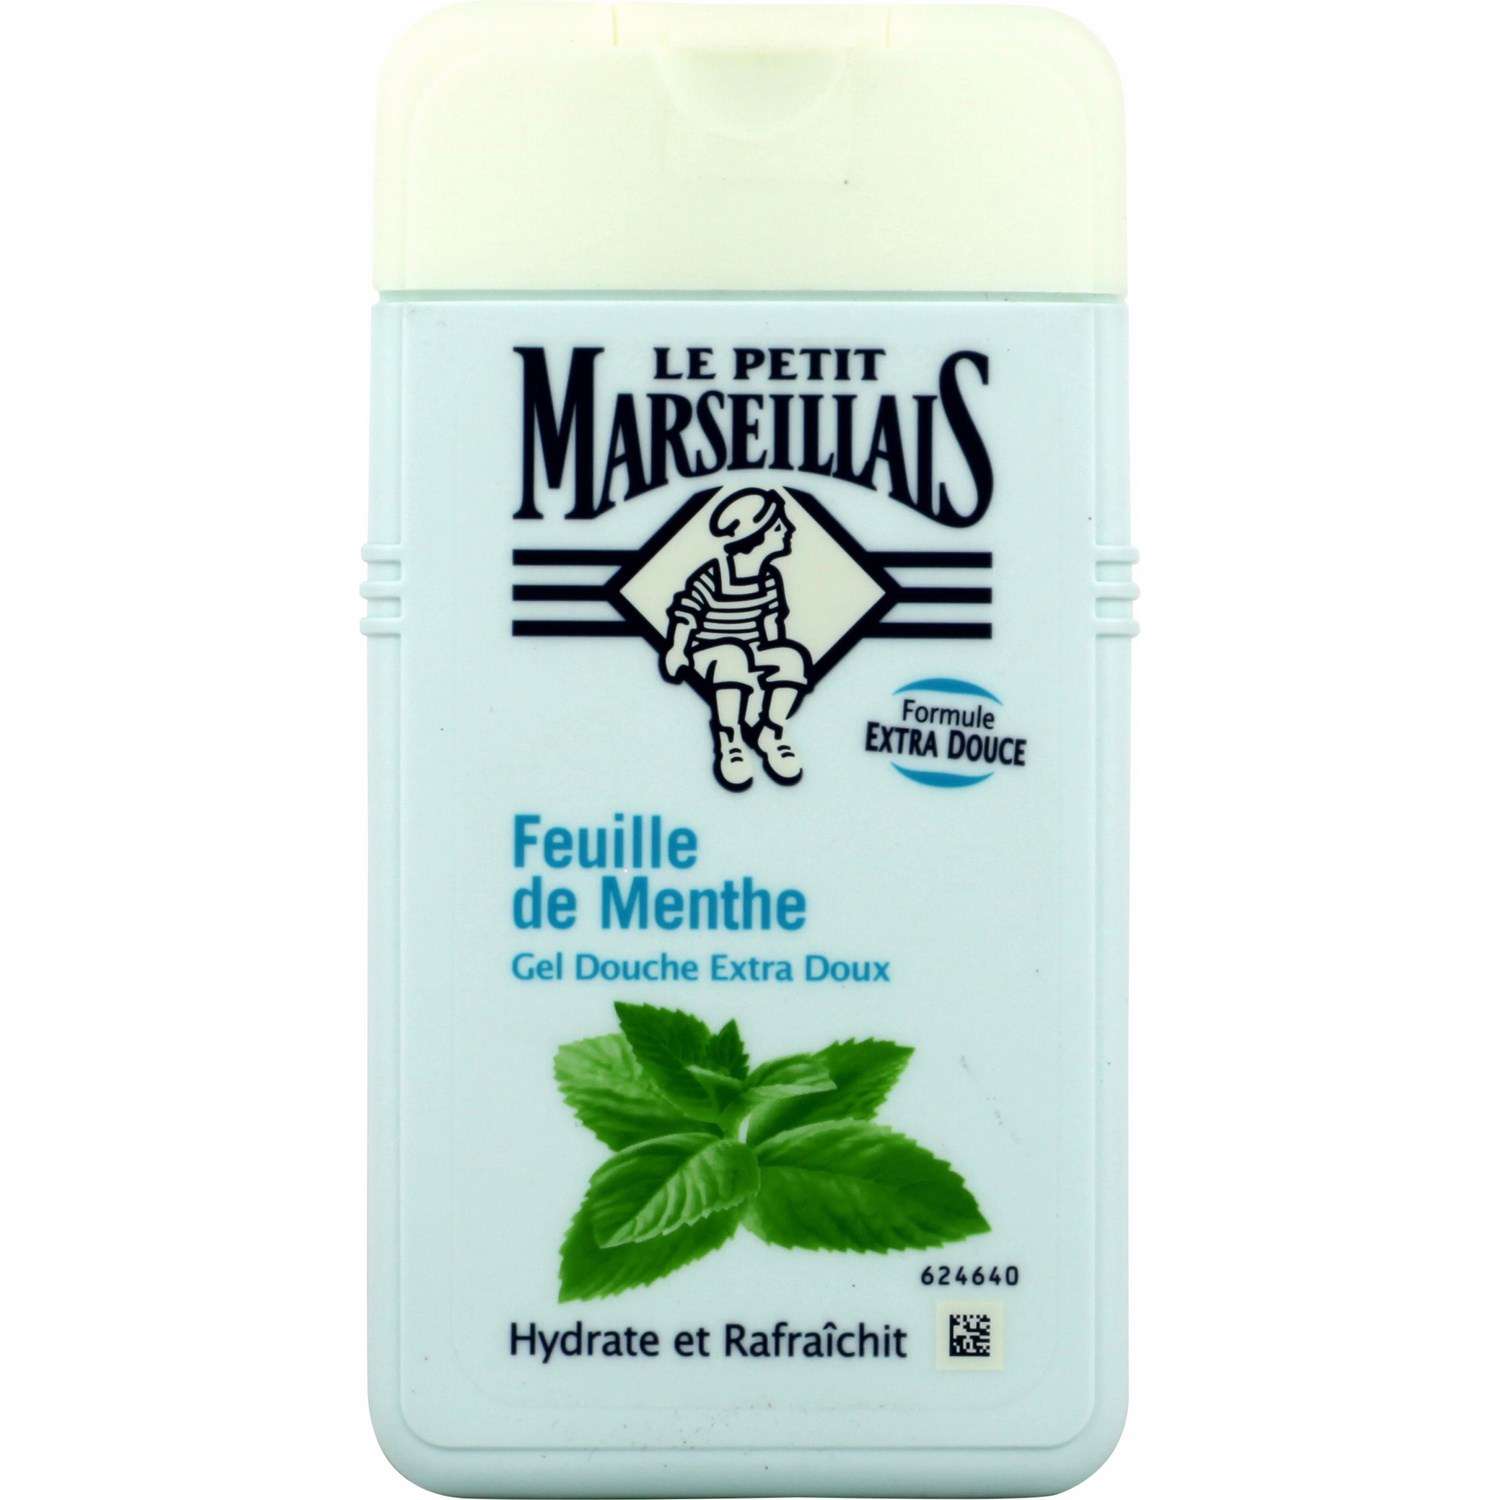 Le Petit Marseillais shower gel mint leafs 250ml